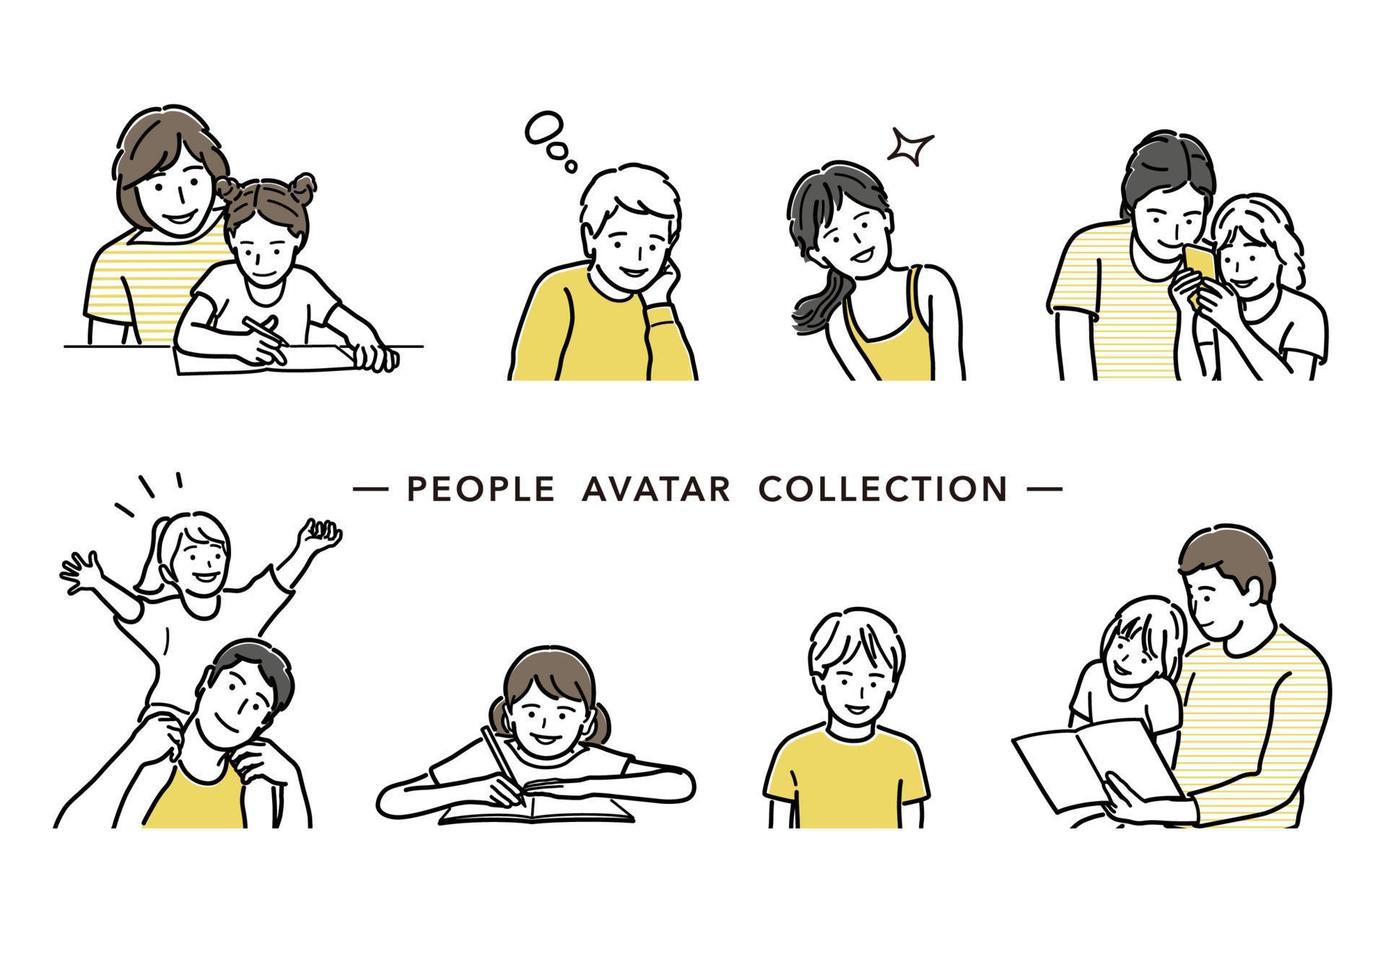 Menschen Avatar Vektor Strichzeichnung Sammlung. Satz von Eltern und Kindern einfache flache Abbildung auf einem weißen Hintergrund.